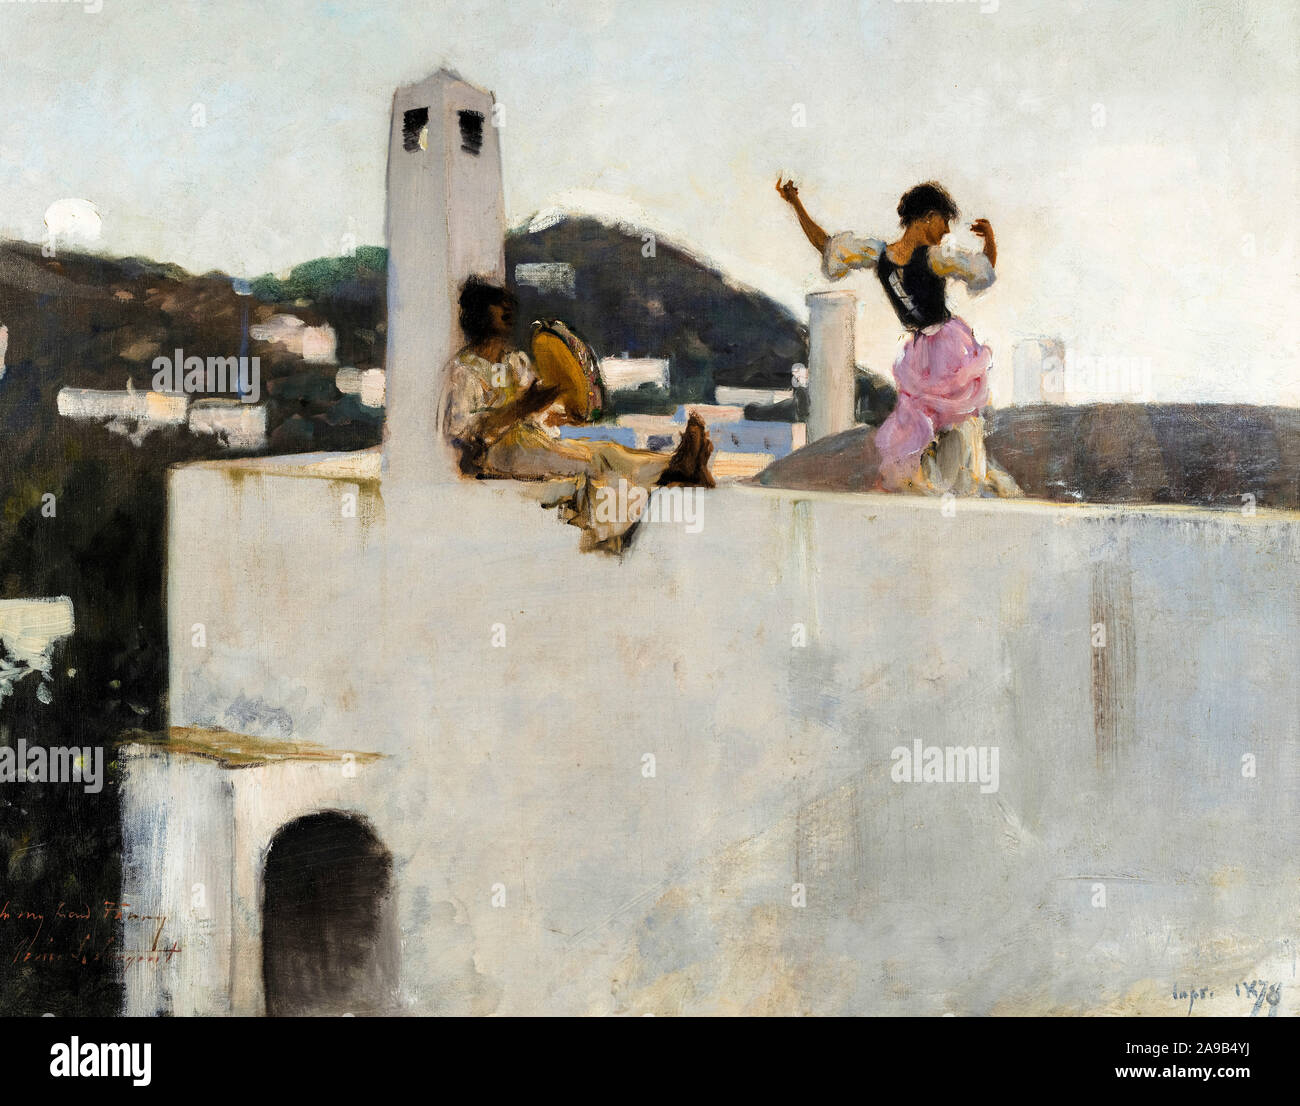 John Singer Sargent, Capri girl sur un toit, peinture, 1878 Banque D'Images